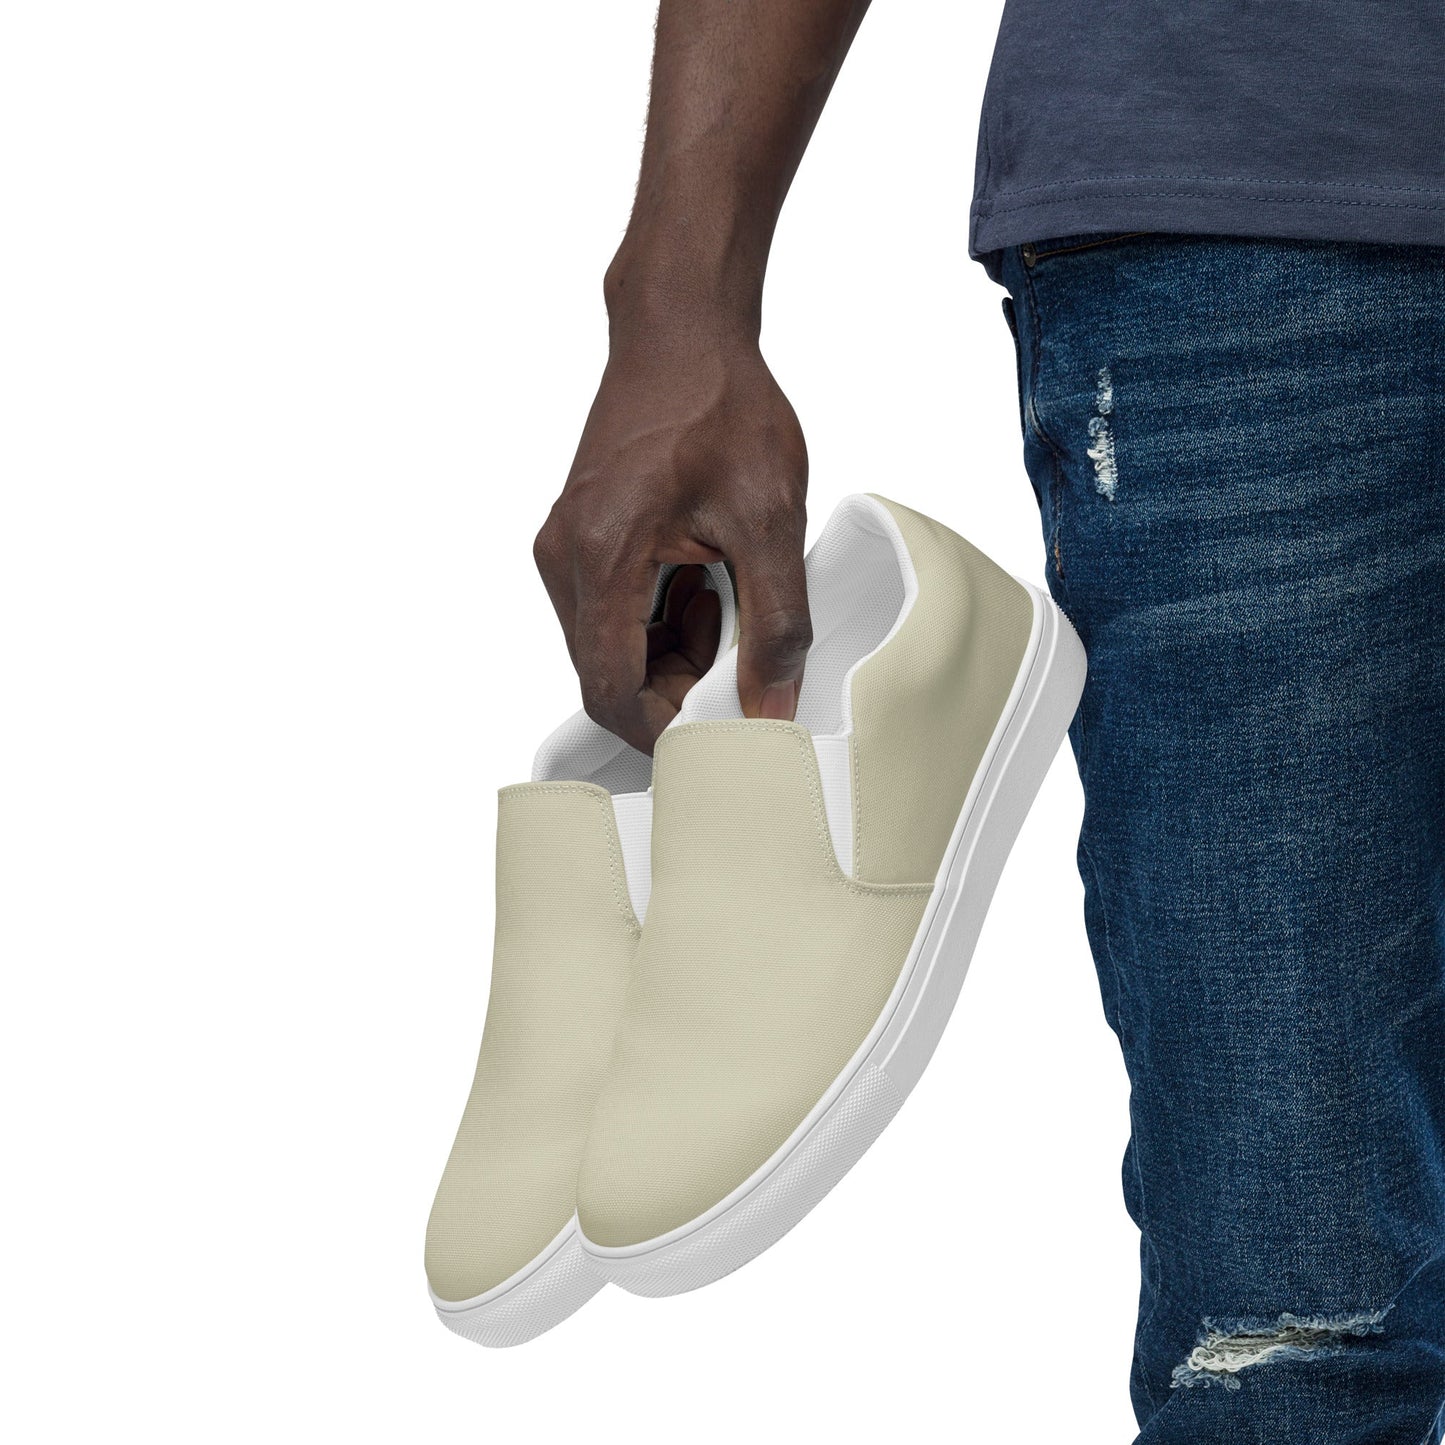 klasneakers Men’s slip-on canvas shoes - Parchment